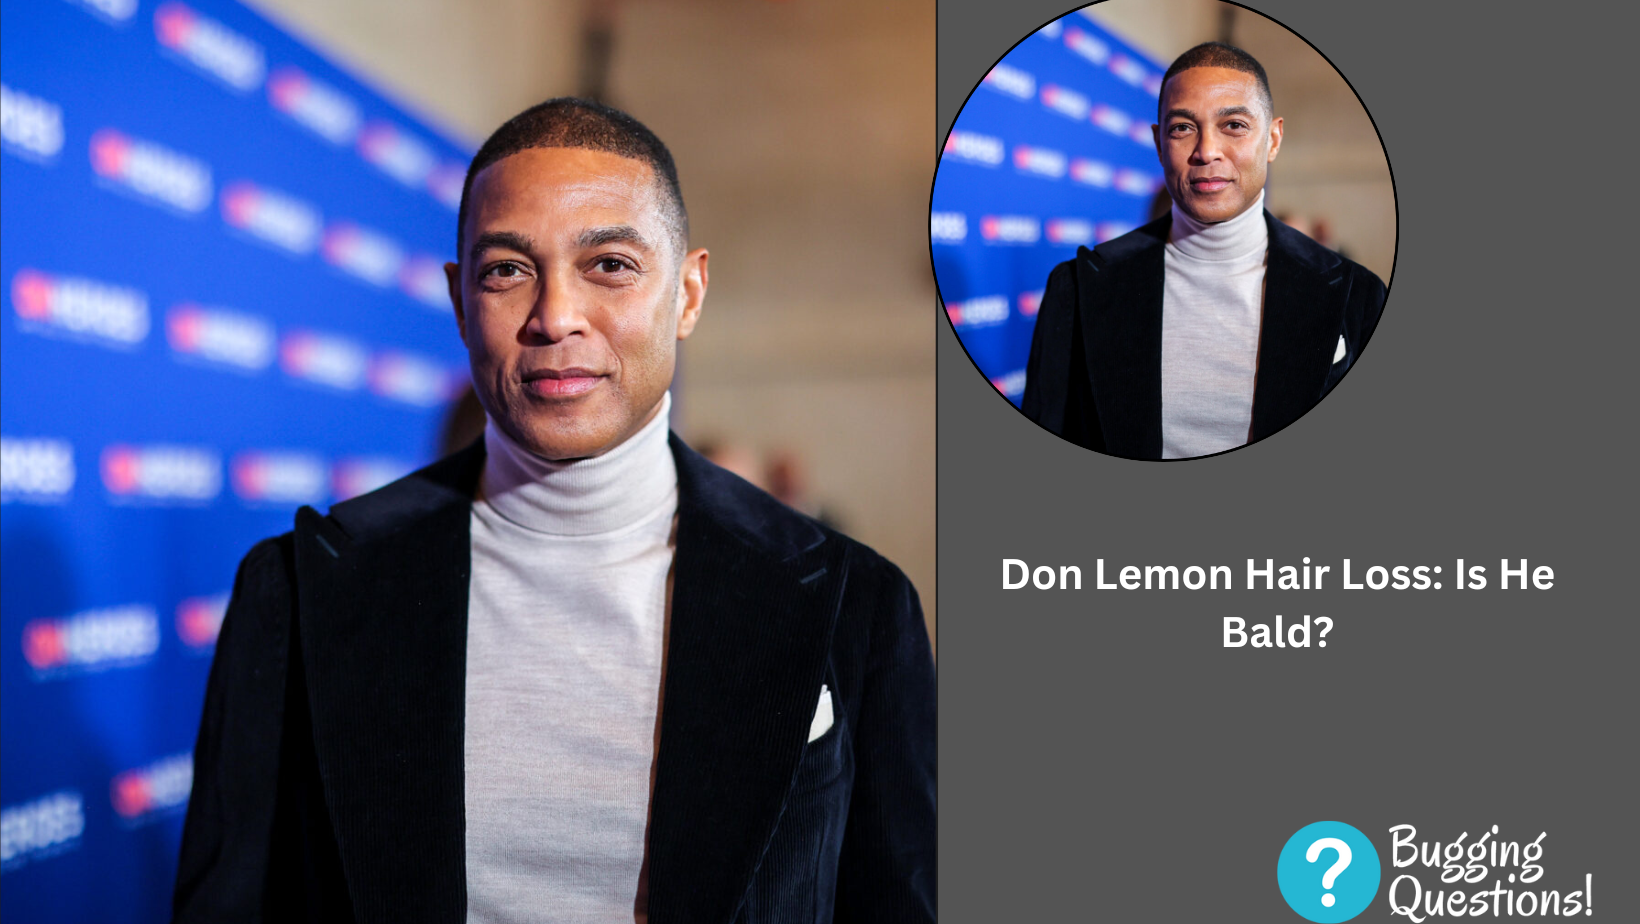 Don Lemon Hair Loss: Is He Bald?